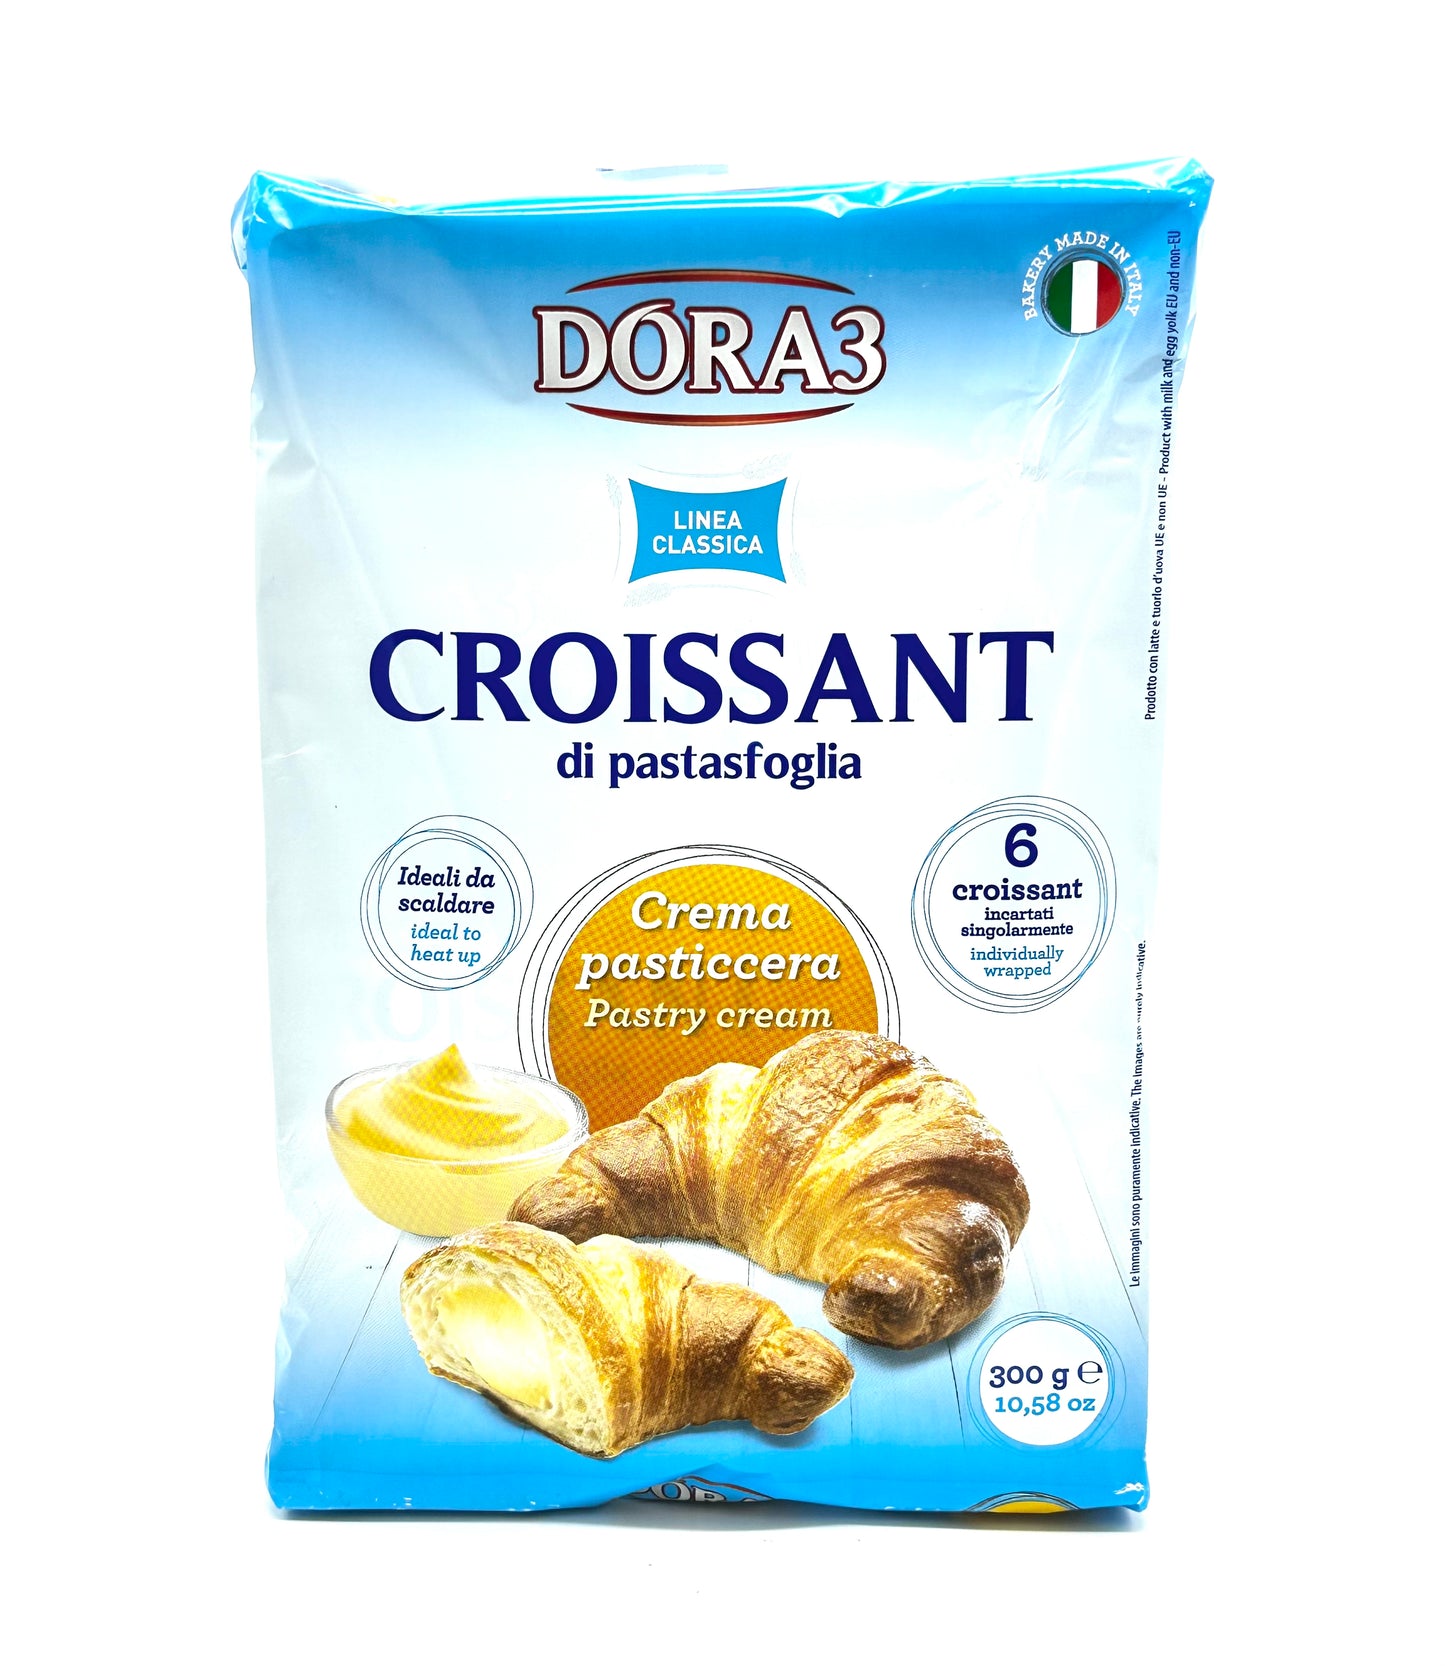 DORA3 Croissant w/ Creme 10.58 oz | 300g